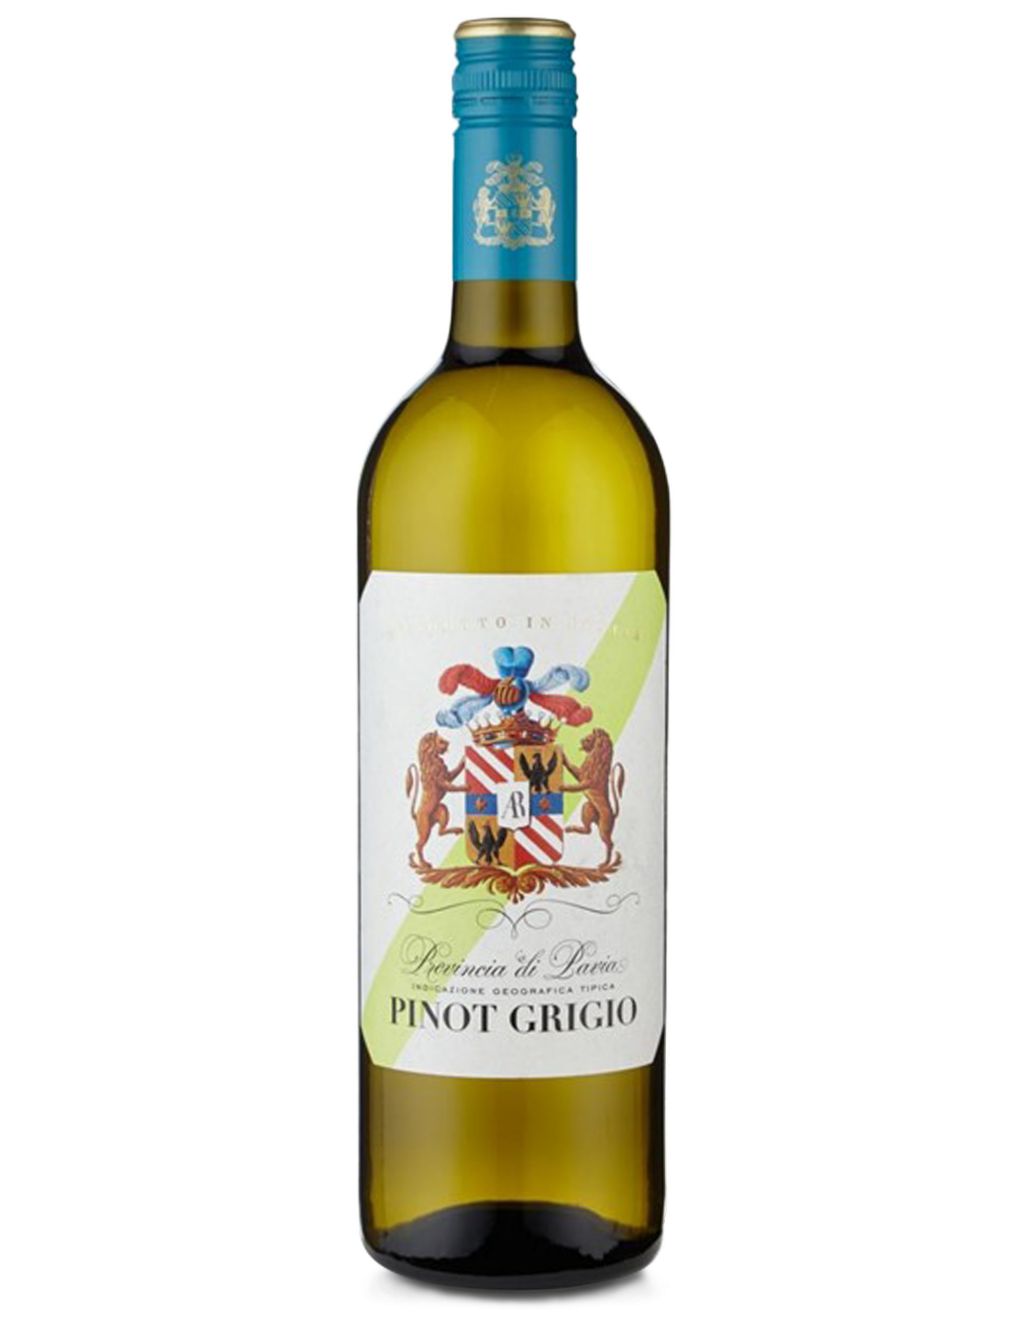 Pavia Pinot Grigio - Case of 6